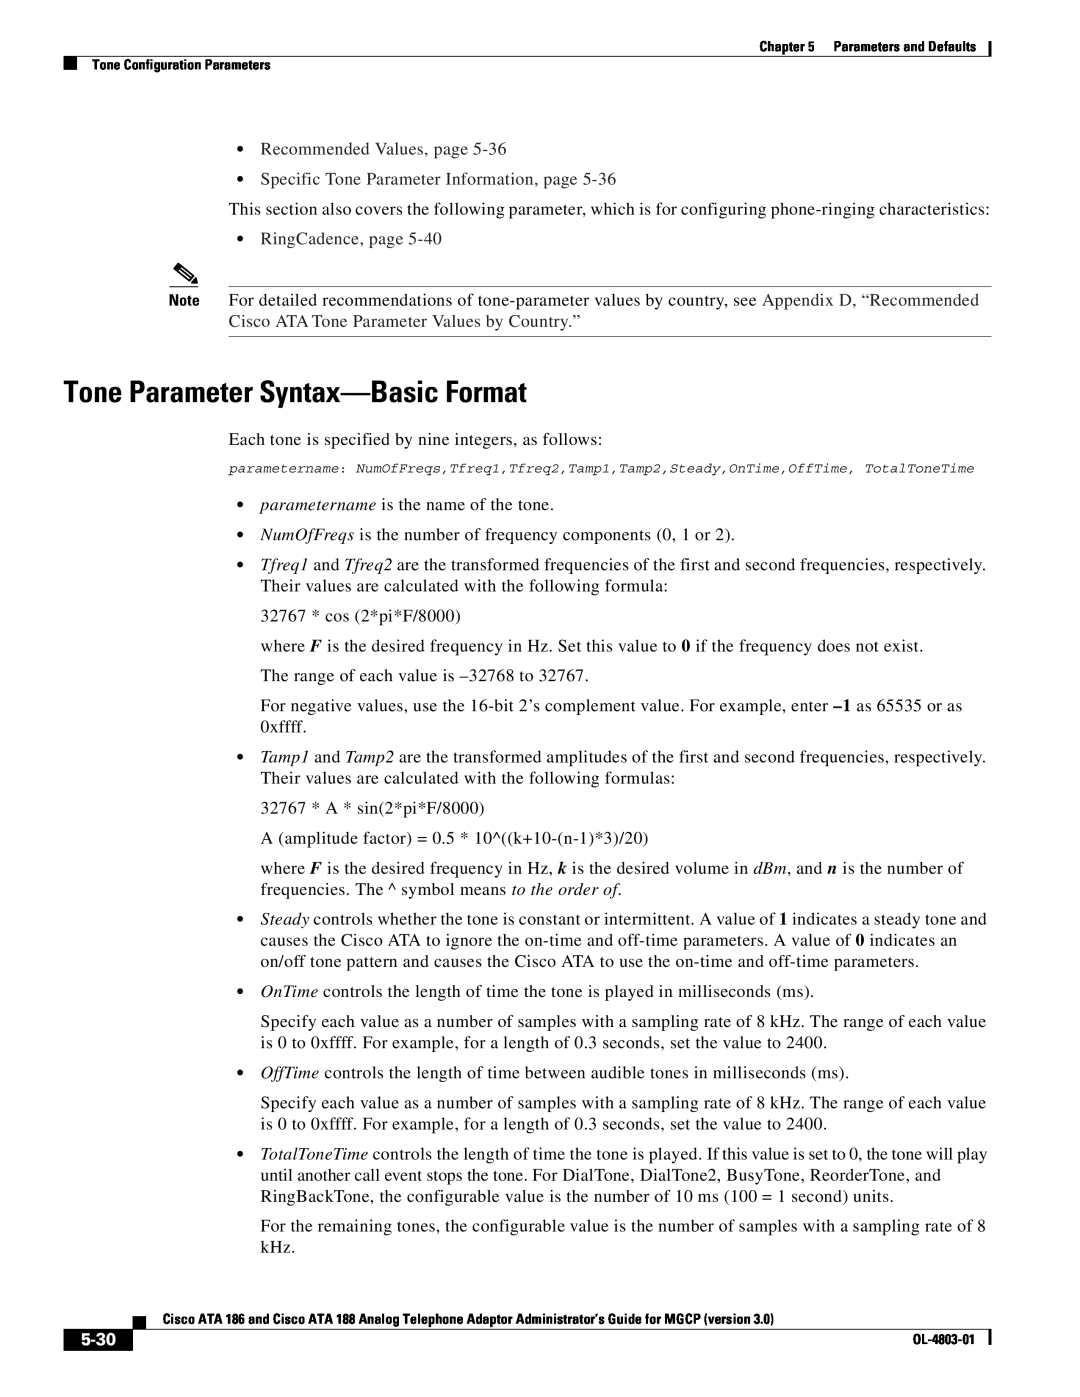 Cisco Systems ATA 186, ATA 188 manual Tone Parameter Syntax-Basic Format, 5-30, RingCadence, page 